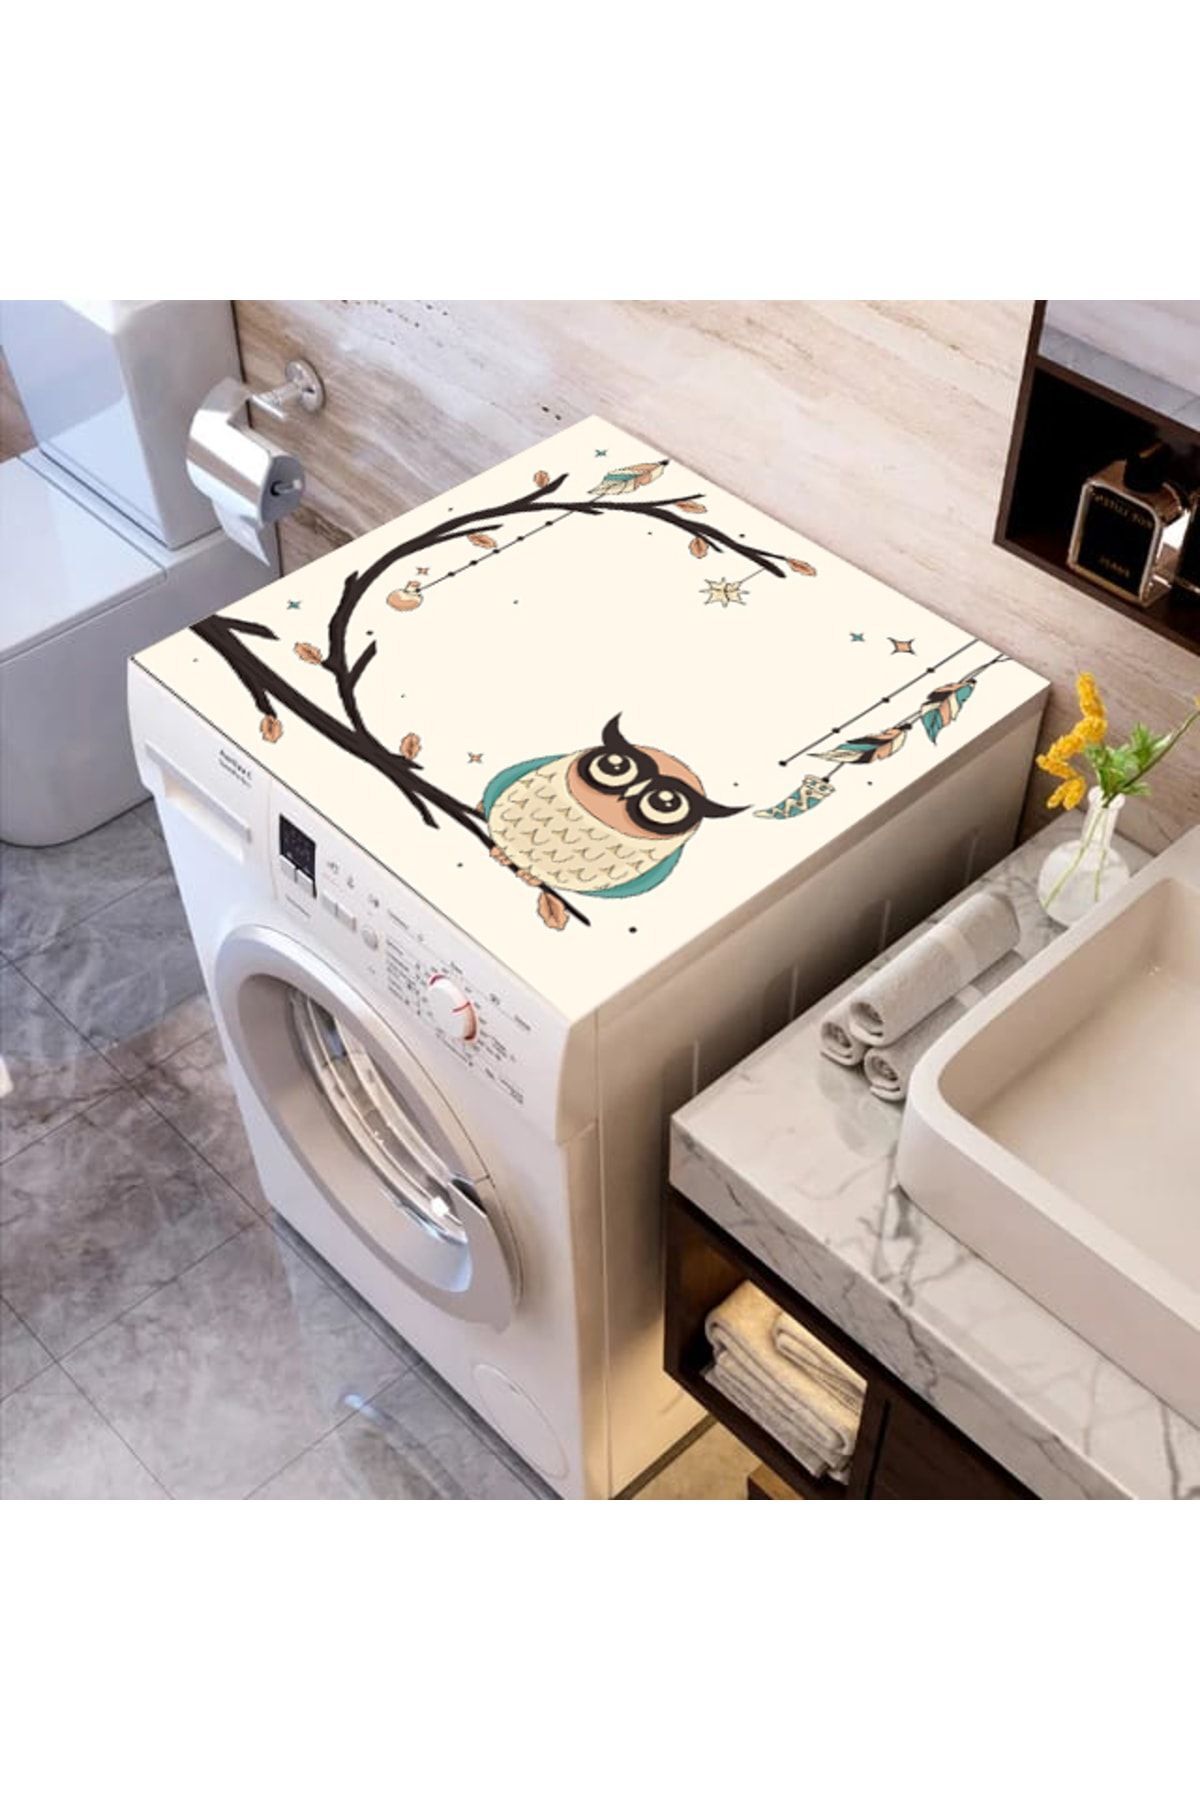 ALAMODECOR Baykuş Desenli 60cm X 100cm Çamaşır Makine Örtüsü | Banyo Düzenleyici